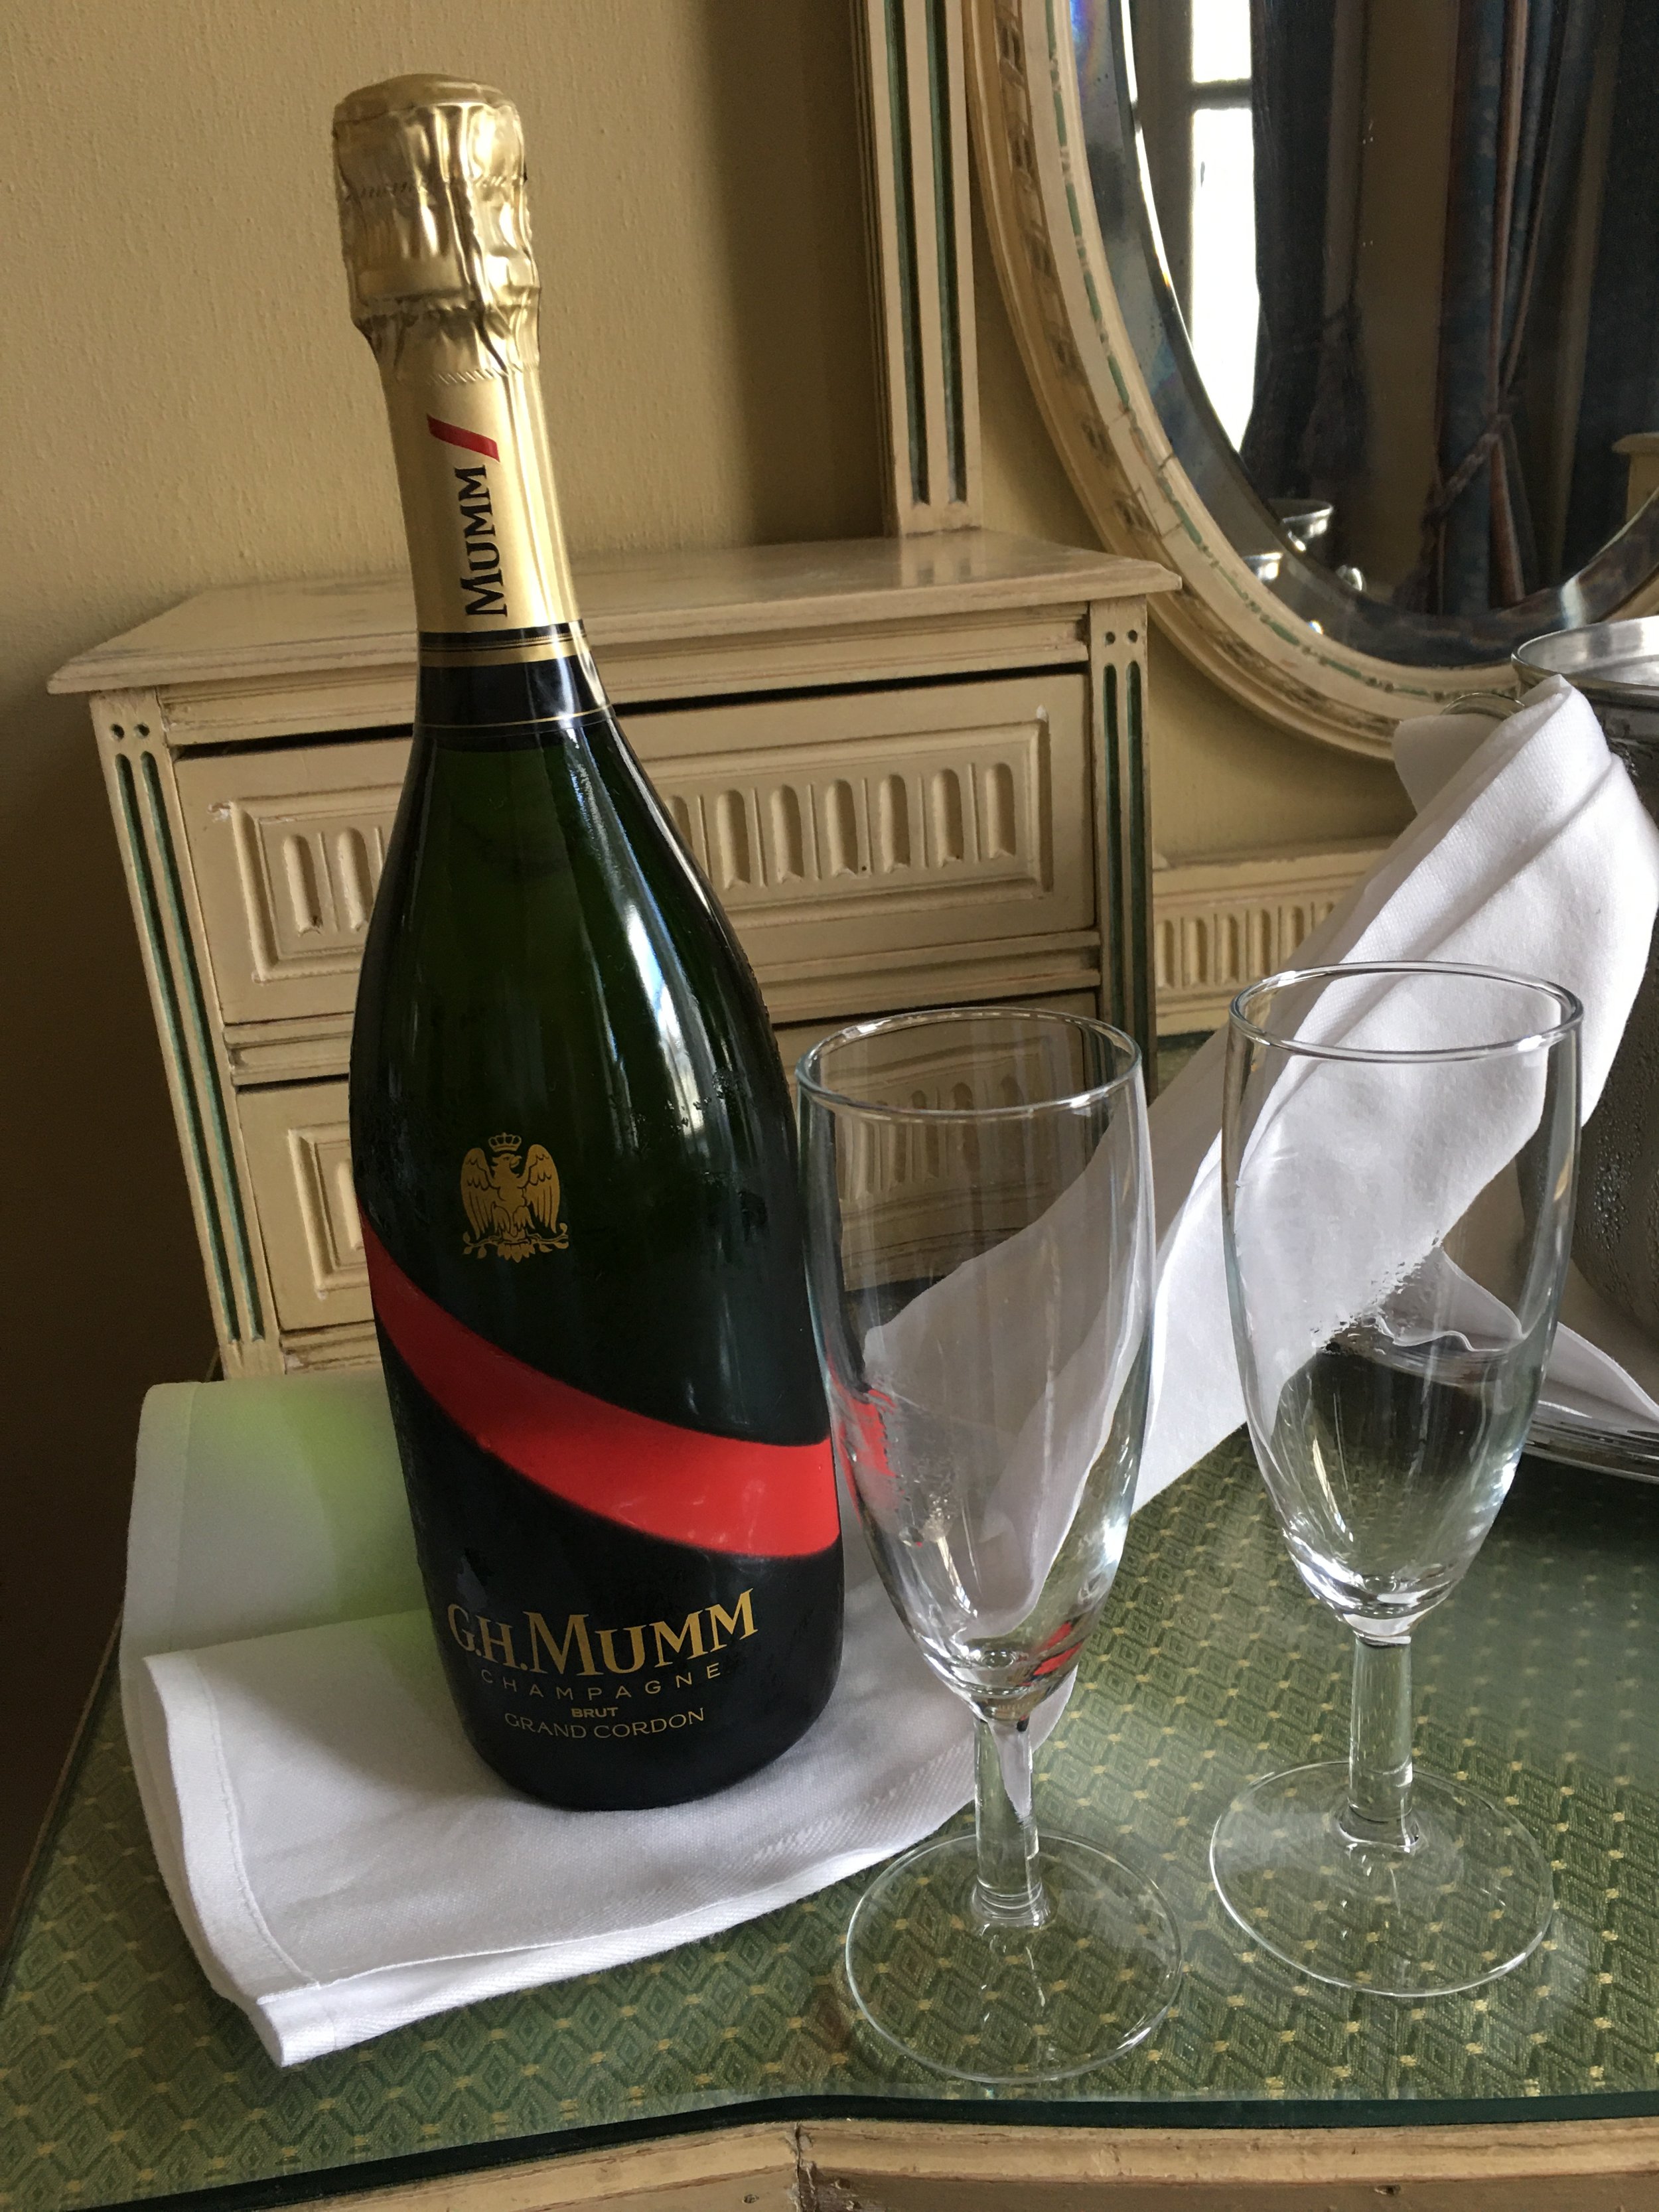 Champagne France tours: Dom Perignon, Mumm, Moet